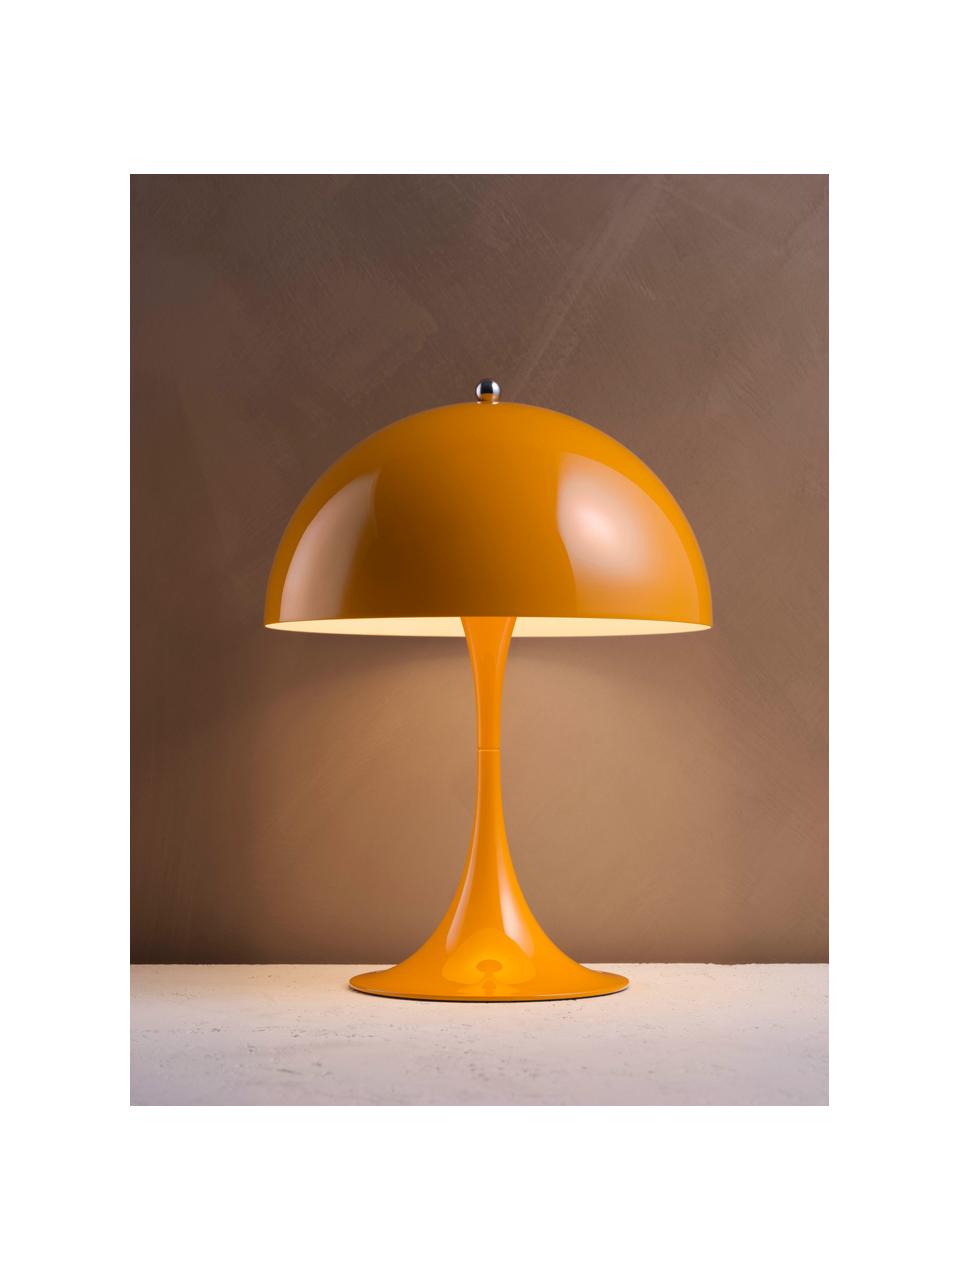 Lampa stołowa LED z funkcją przyciemniania Panthella, W 34 cm, Stelaż: aluminium powlekane, Pomarańczowa stal, Ø 25 x 34 cm